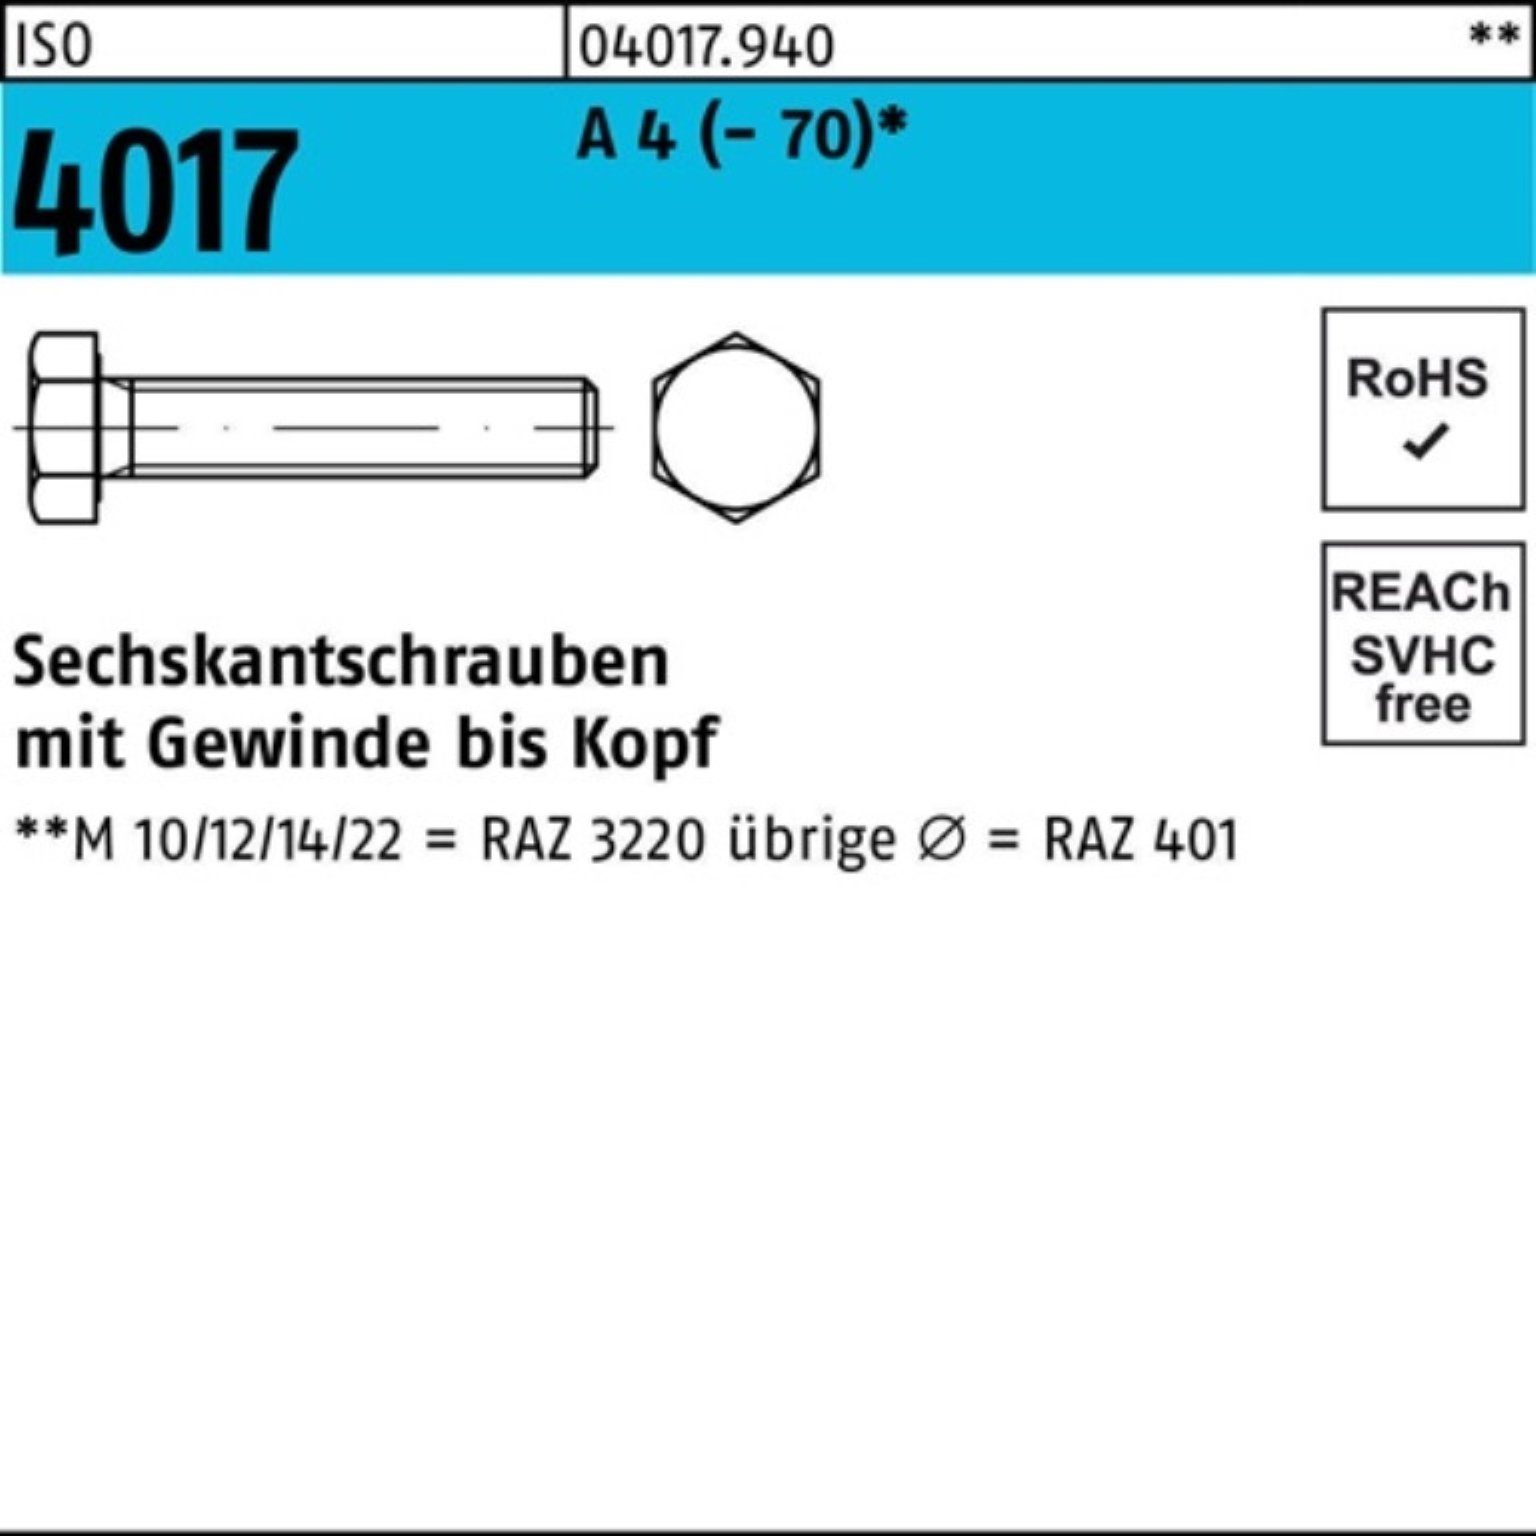 Bufab Sechskantschraube 100er Pack Sechskantschraube ISO 4017 VG M16x 80 A 4 (70) 25 Stück